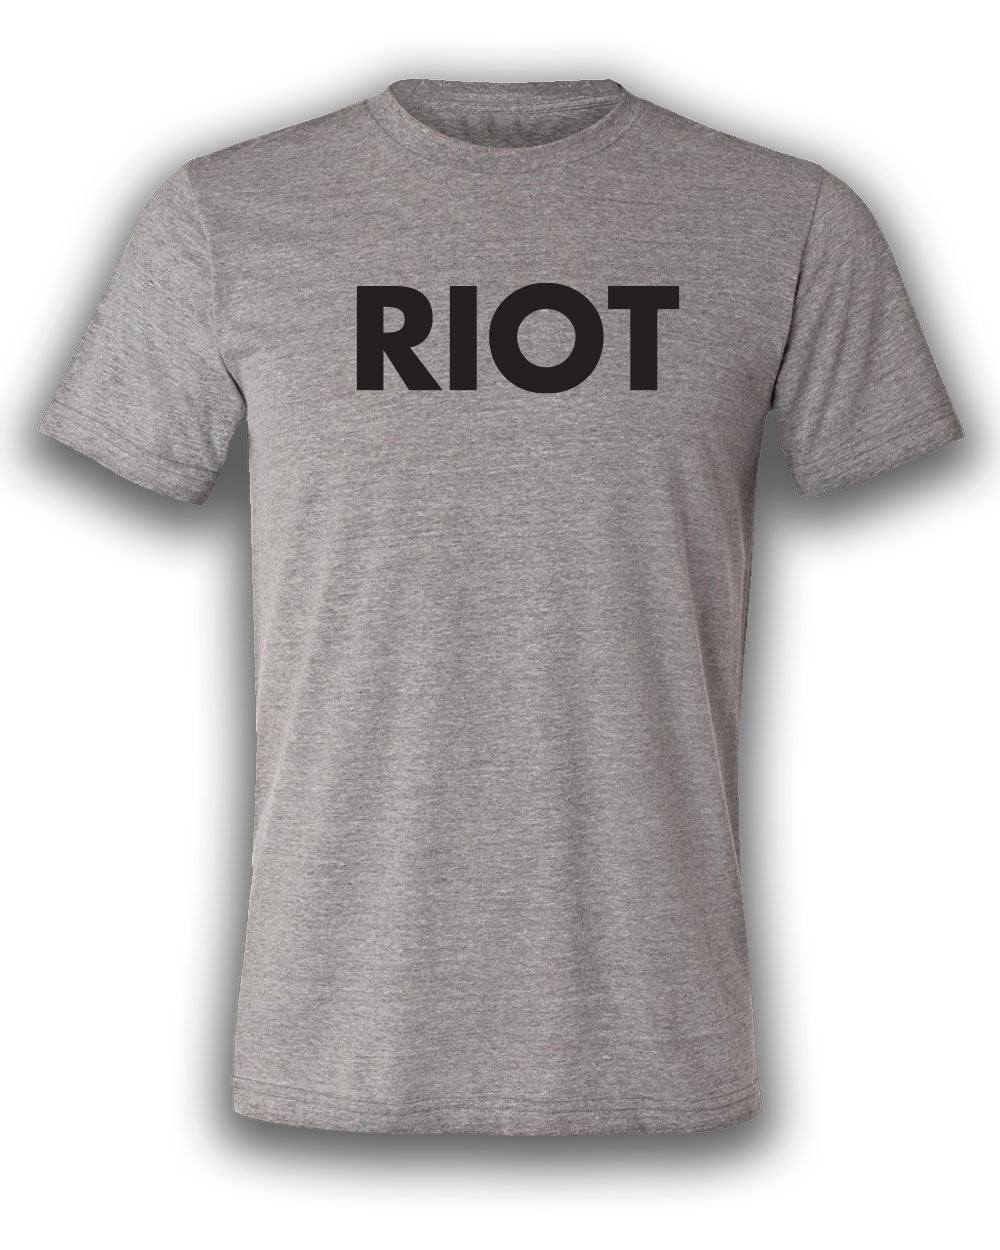 RIOT T-shirt